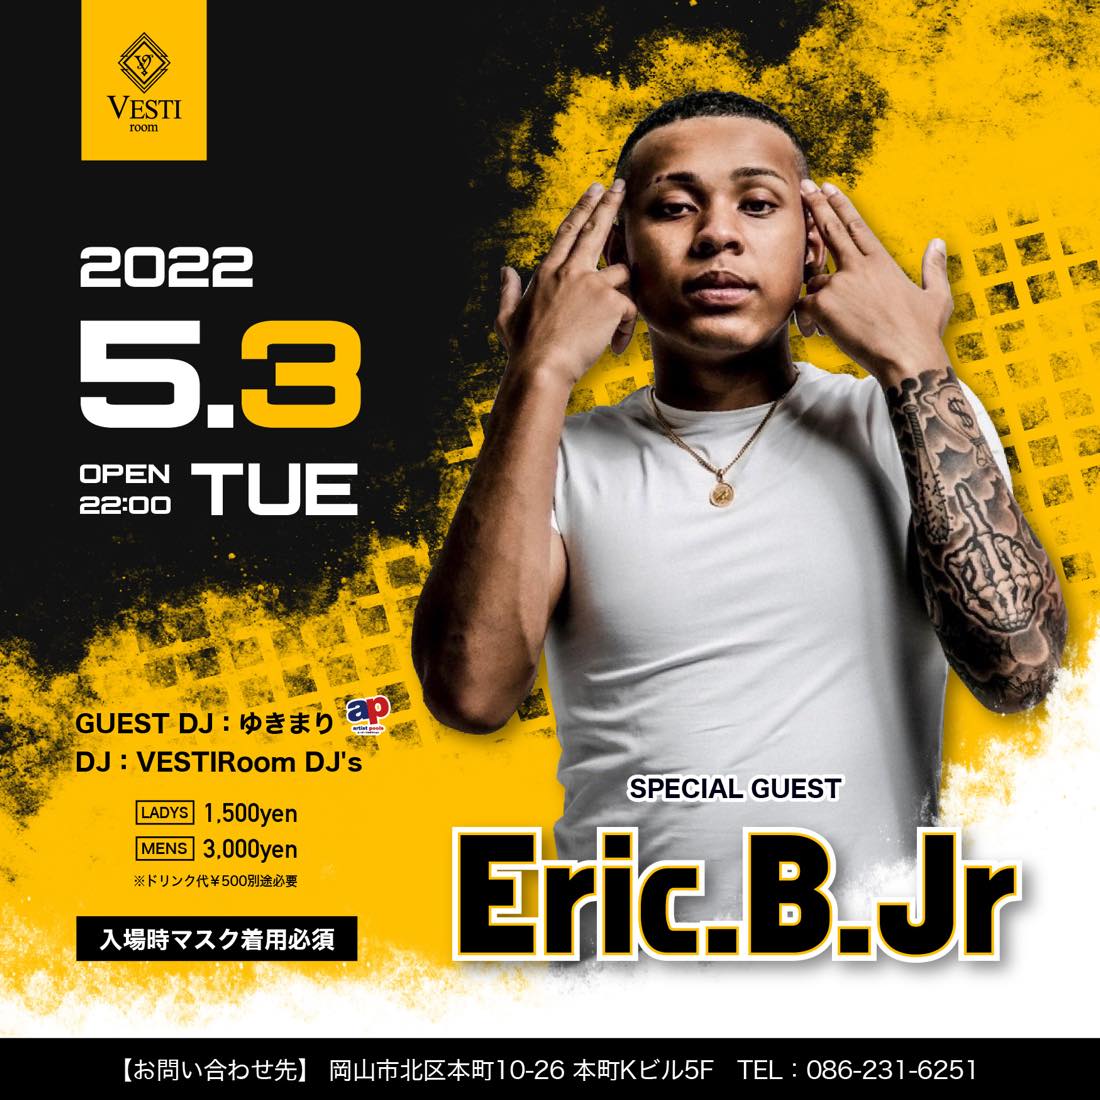 SPECIAL GUEST : Eric.B.Jr